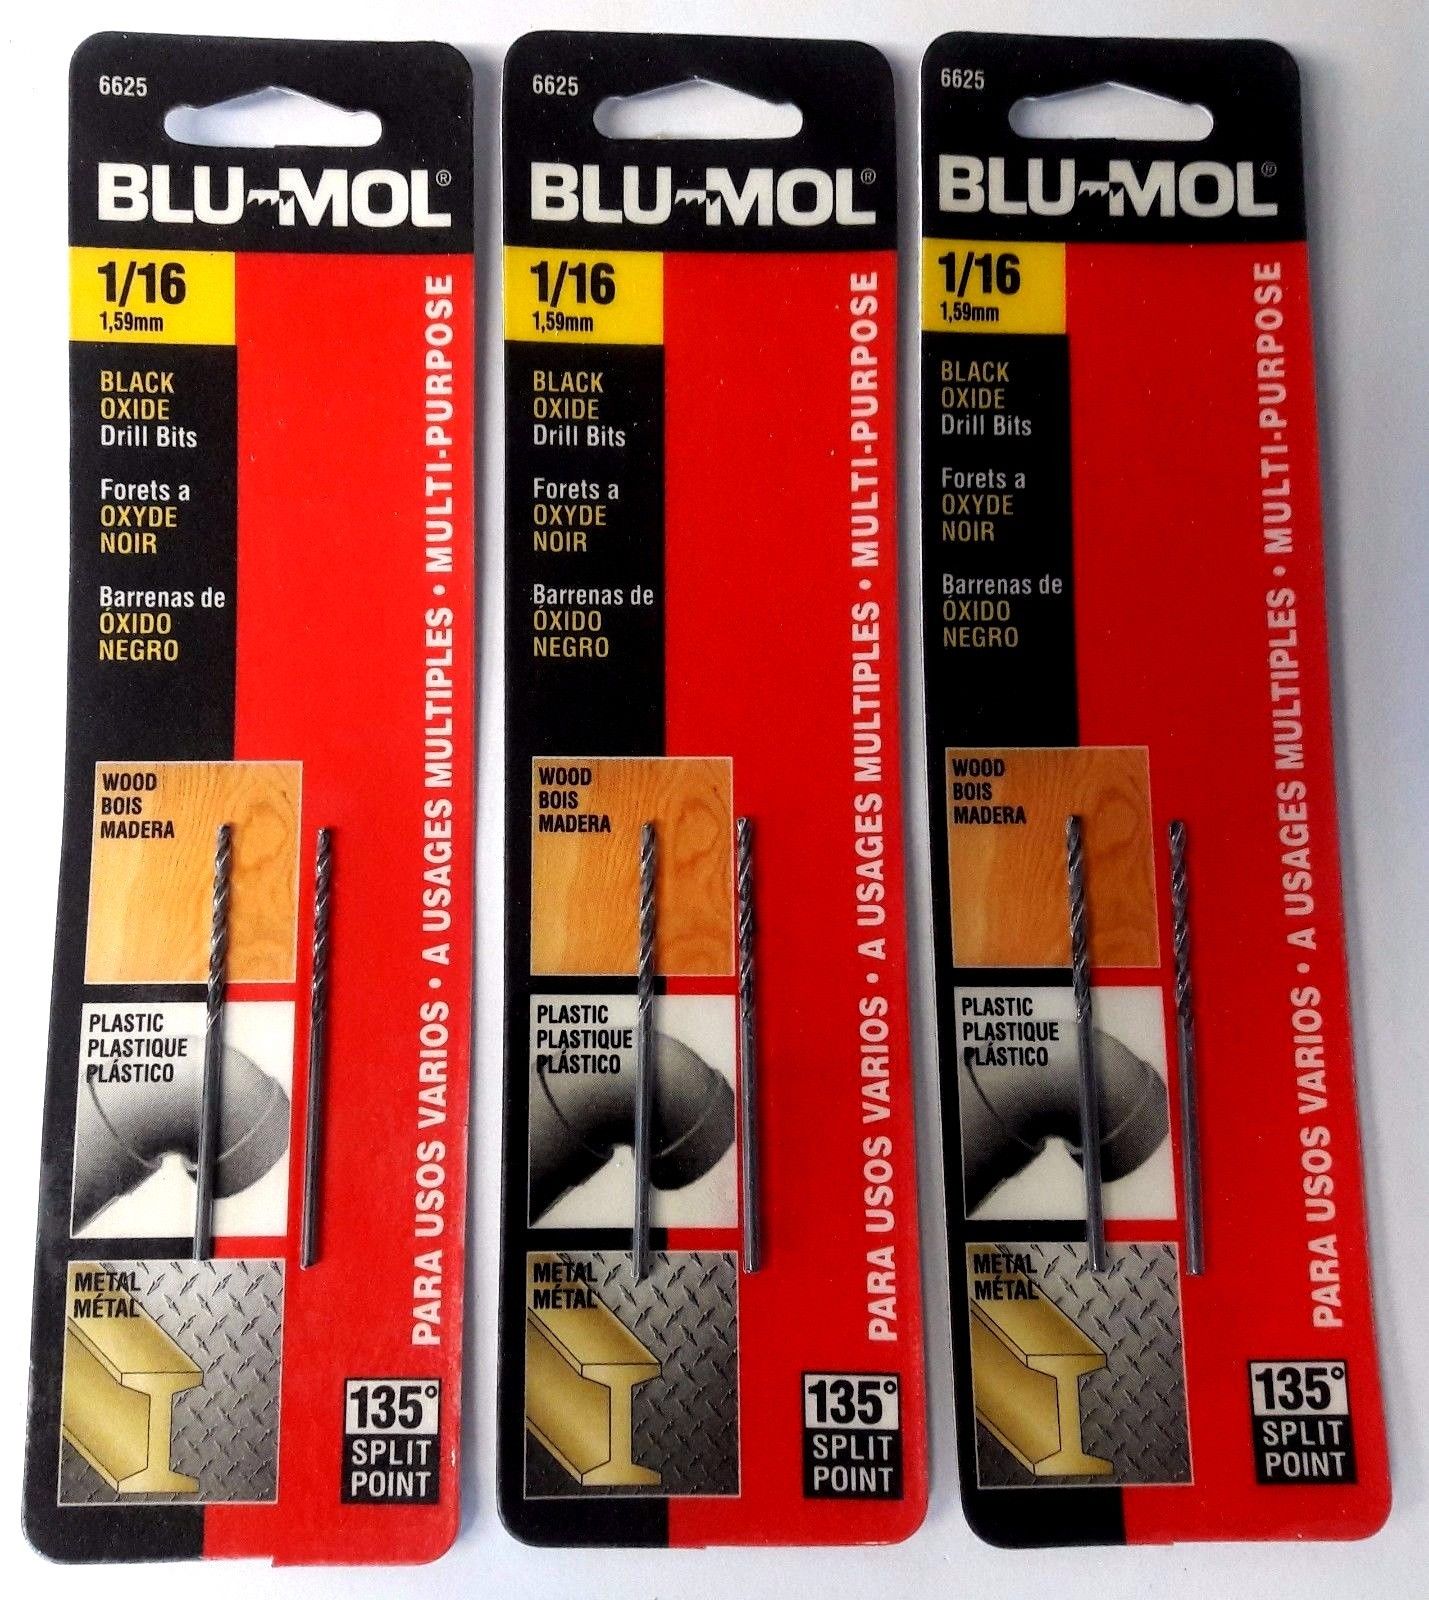 Blu-Mol 1/16" High Speed Drill Bit 6625 3-2 Packs